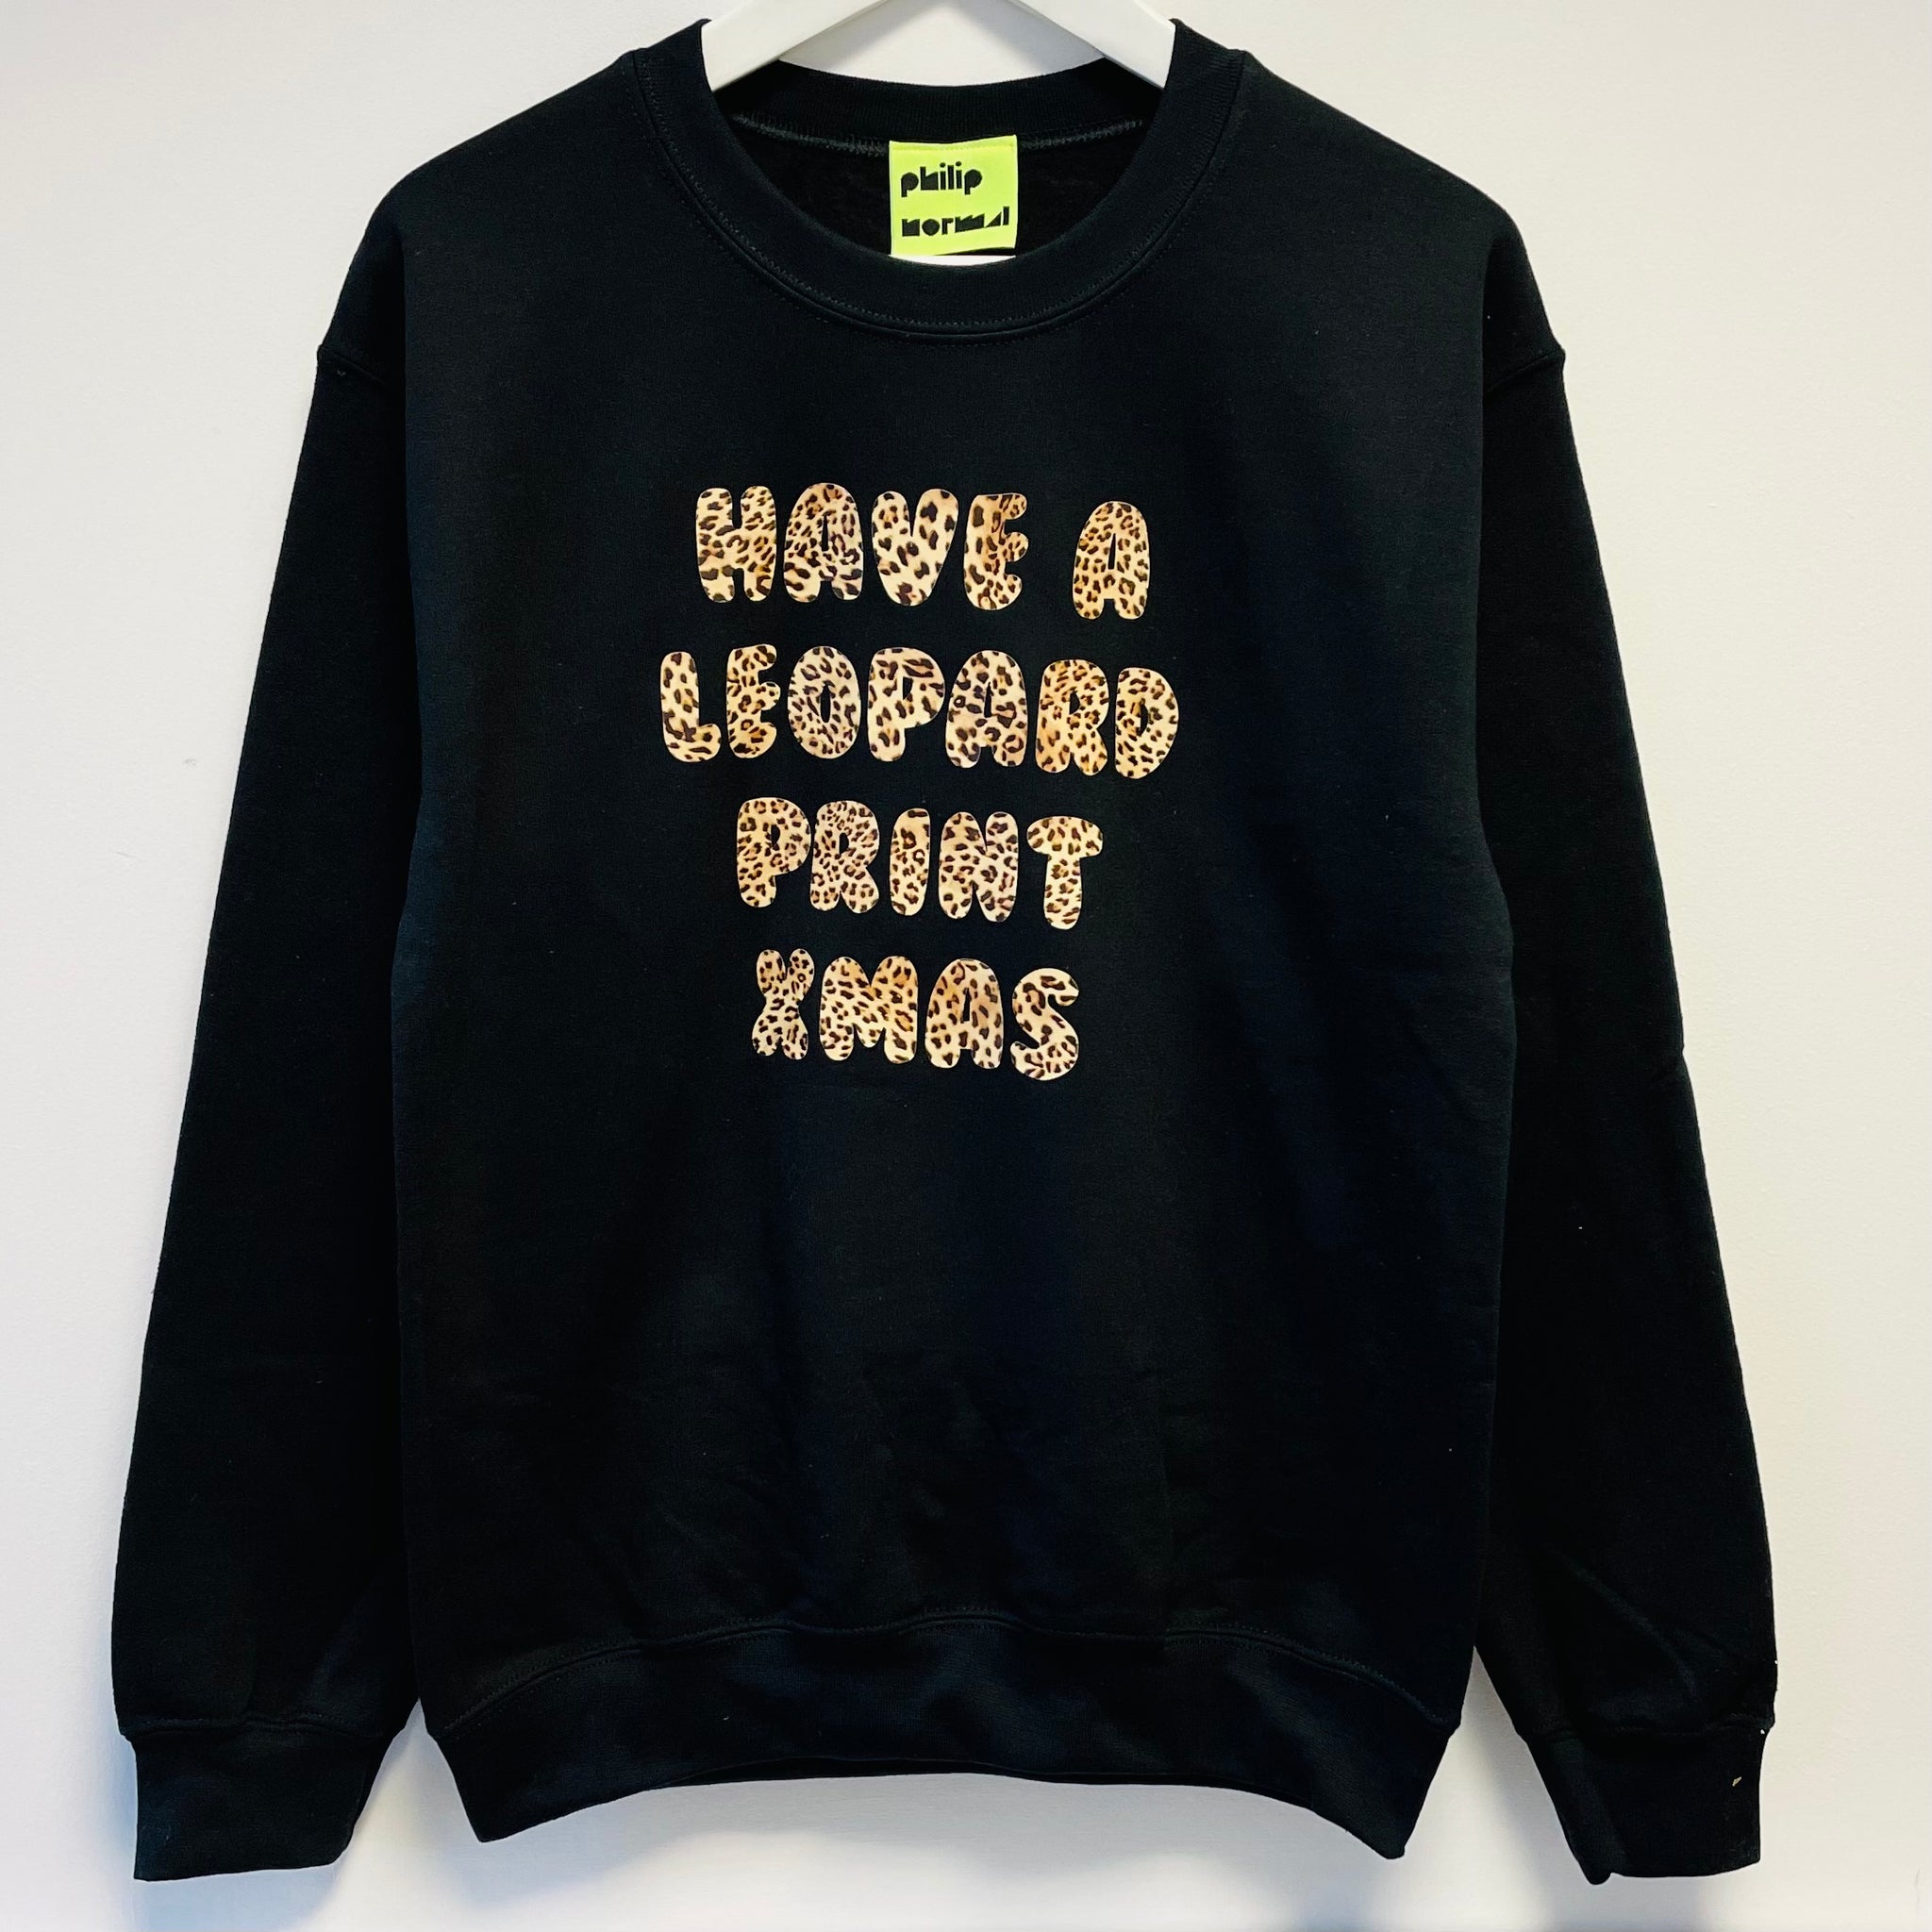 Have A Leopard Print Xmas Sweatshirt hi